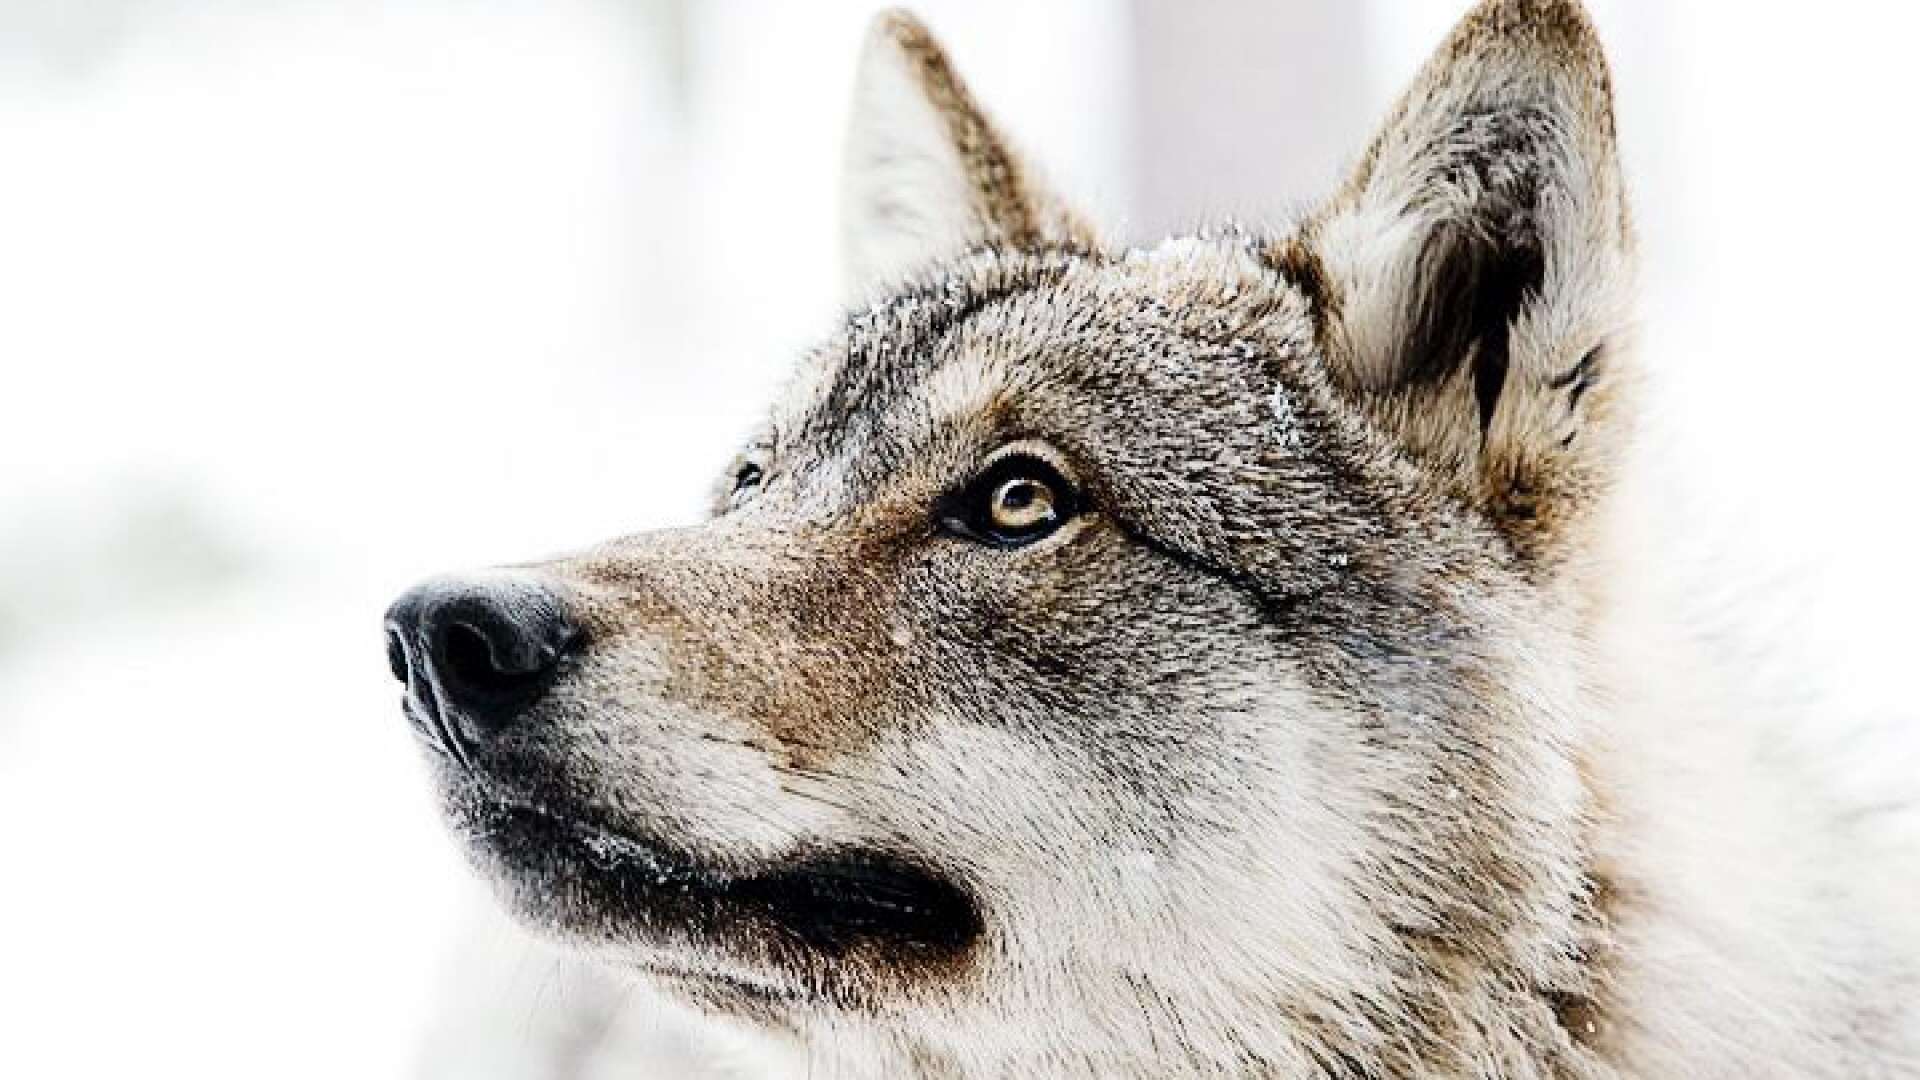 Föryngringar av vargstammen ska hållas på en miniminivå av 7,5 vargar i Värmland, enligt ett förslag från länsstyrelserna i mellersta förvaltningsområdet.